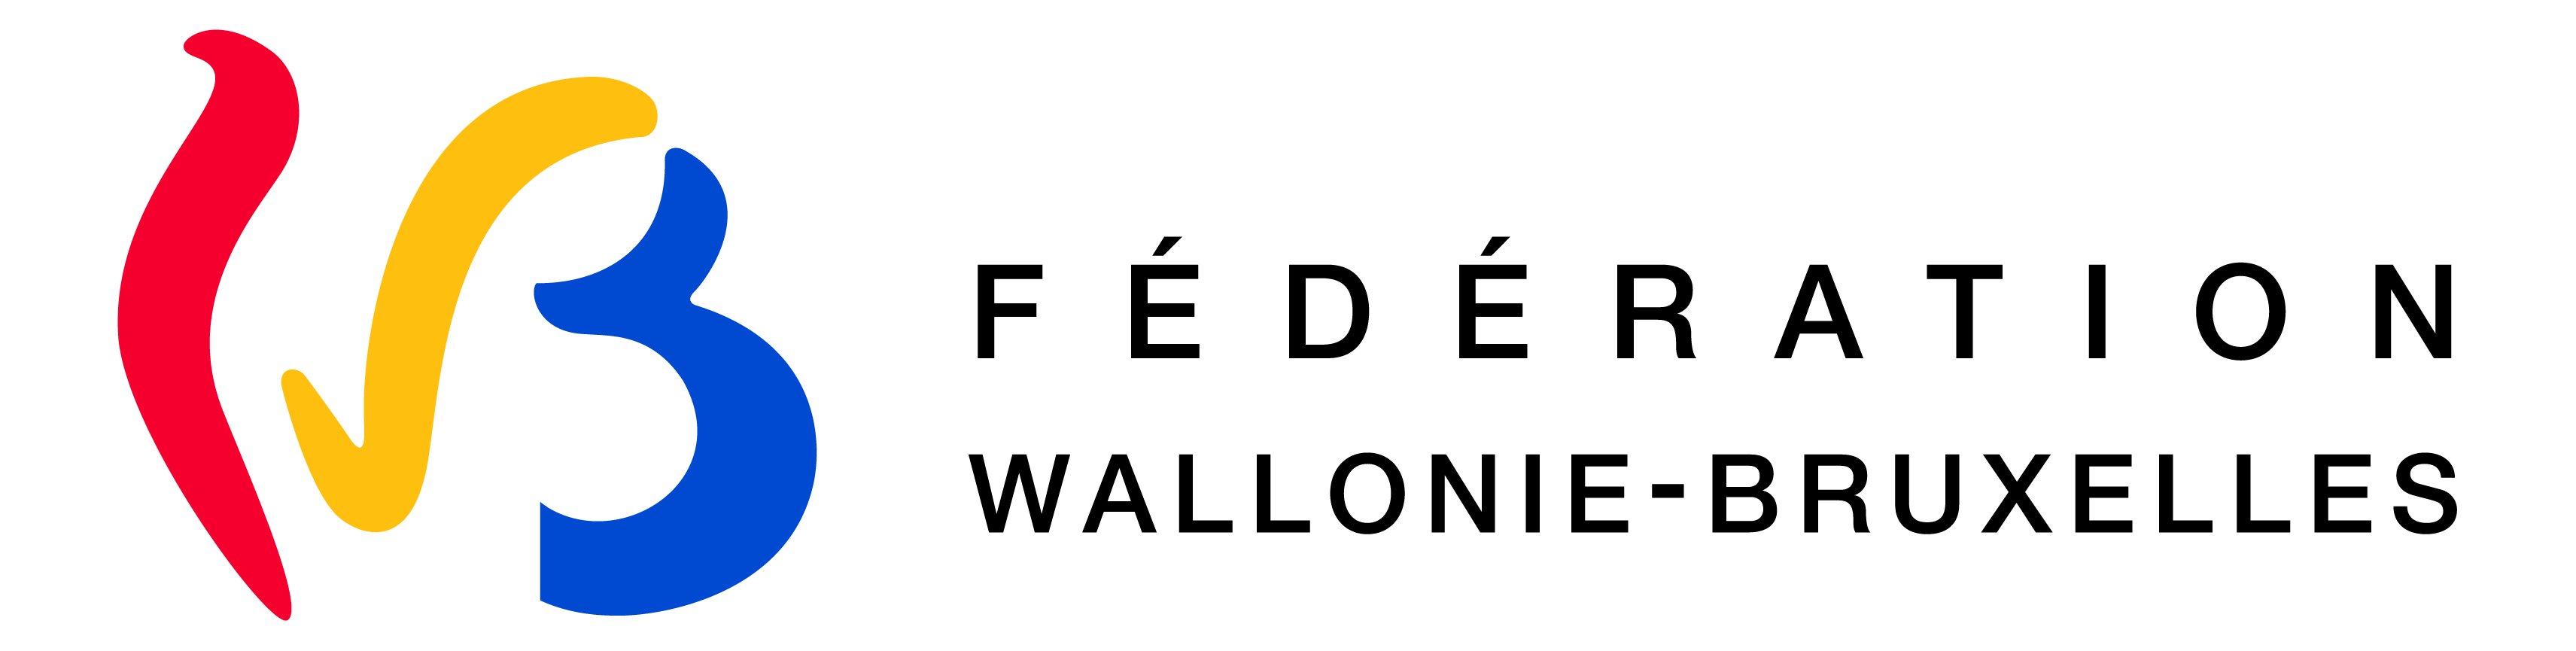 Fédération Wallonie-Bruxelles logo